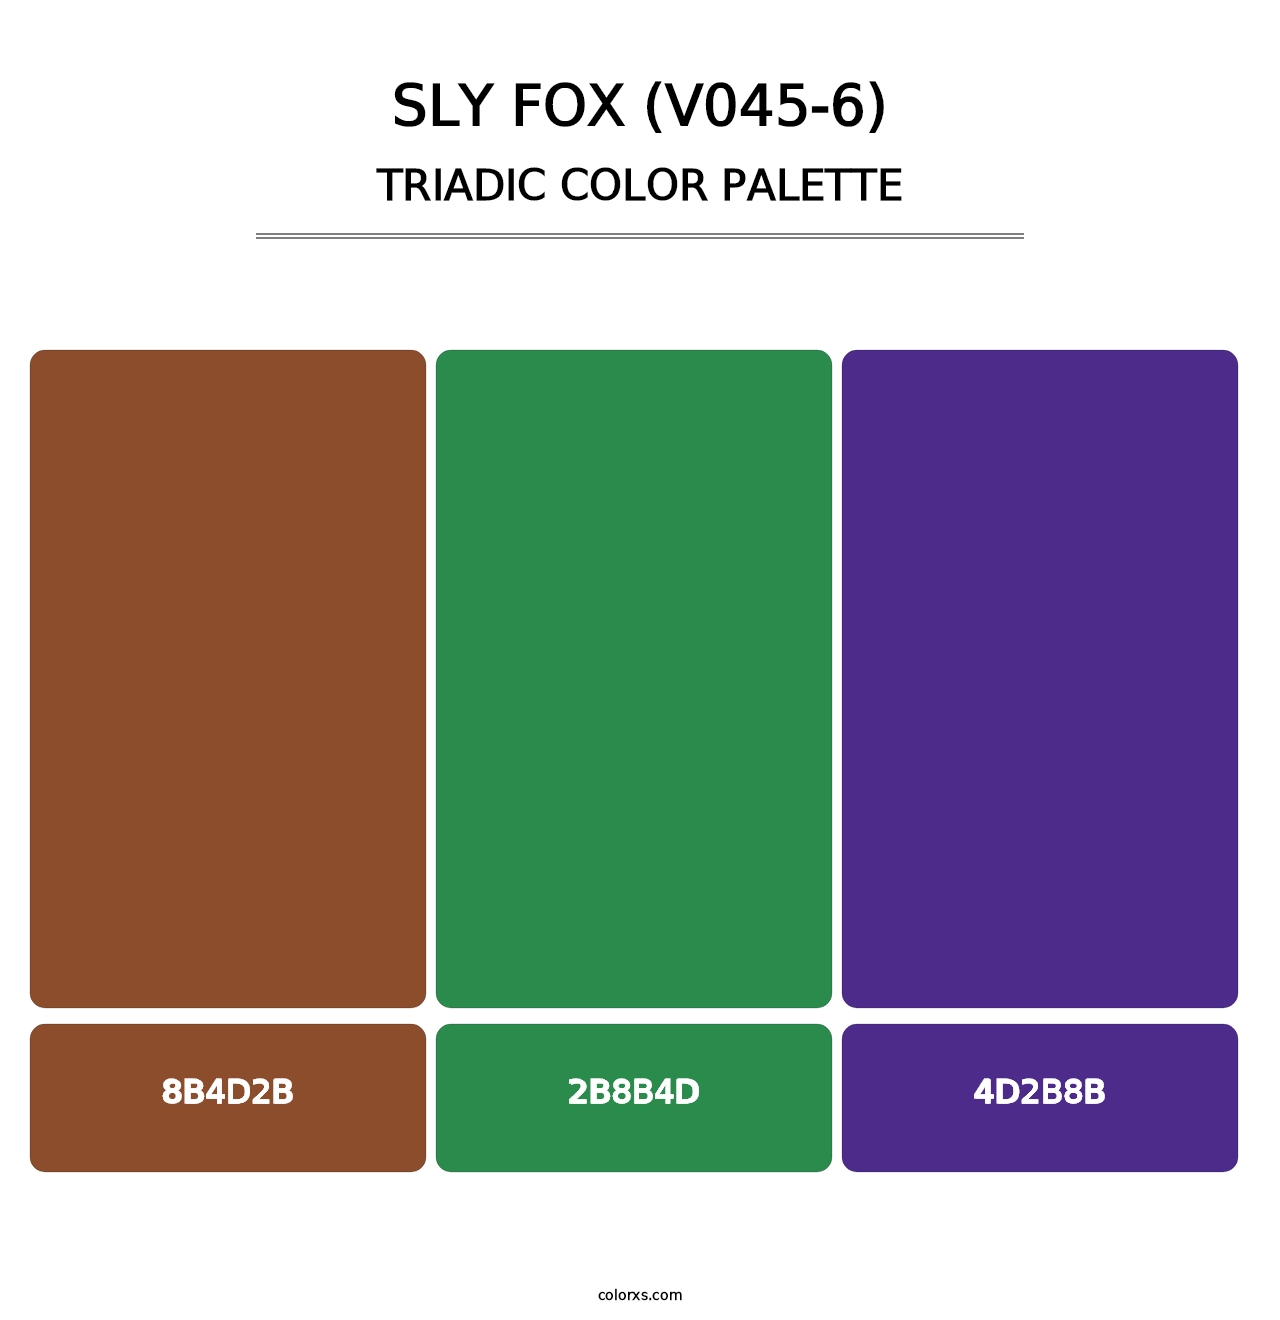 Sly Fox (V045-6) - Triadic Color Palette